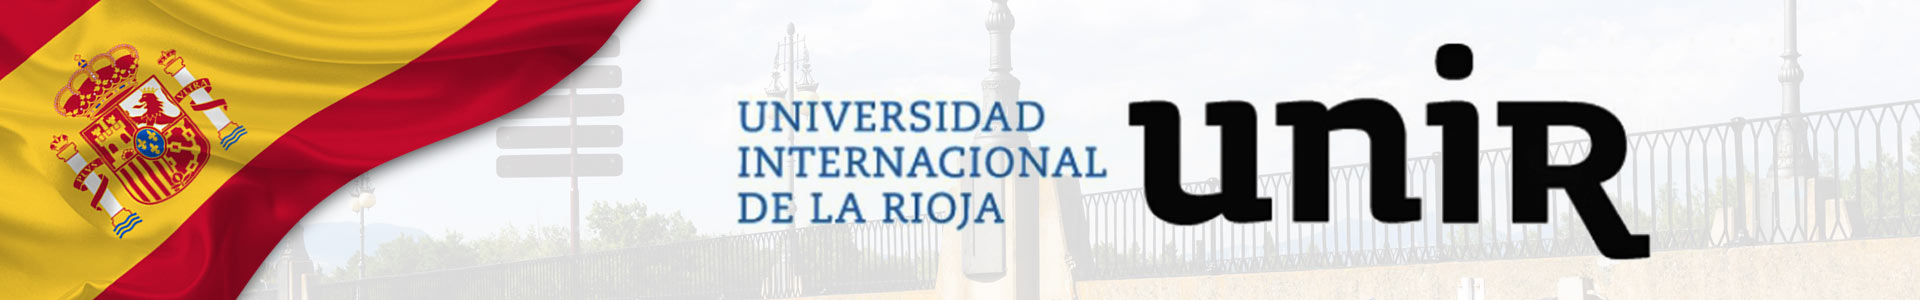 Bandera de España con logo de Universidad Internacional de la Rioja